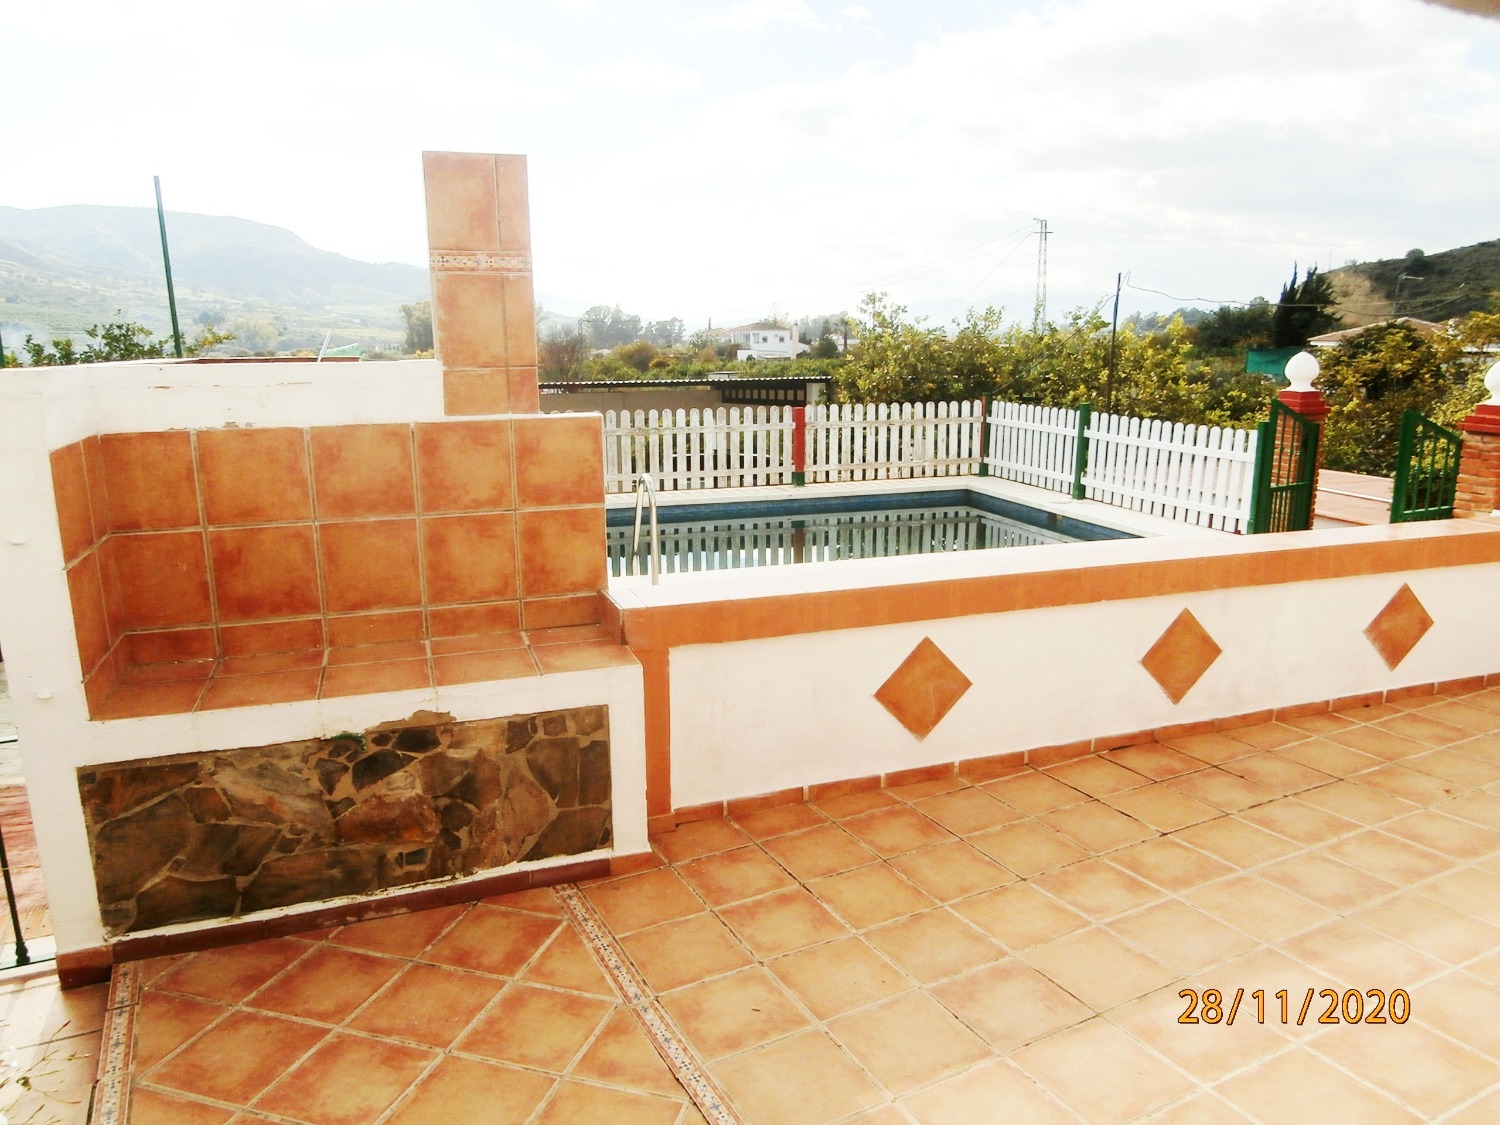 Groot halfvrijstaand landhuis in Andalusische stijl met zwembad, bouwland, volledig omheind ca. 3.220 m2, goede toegang.